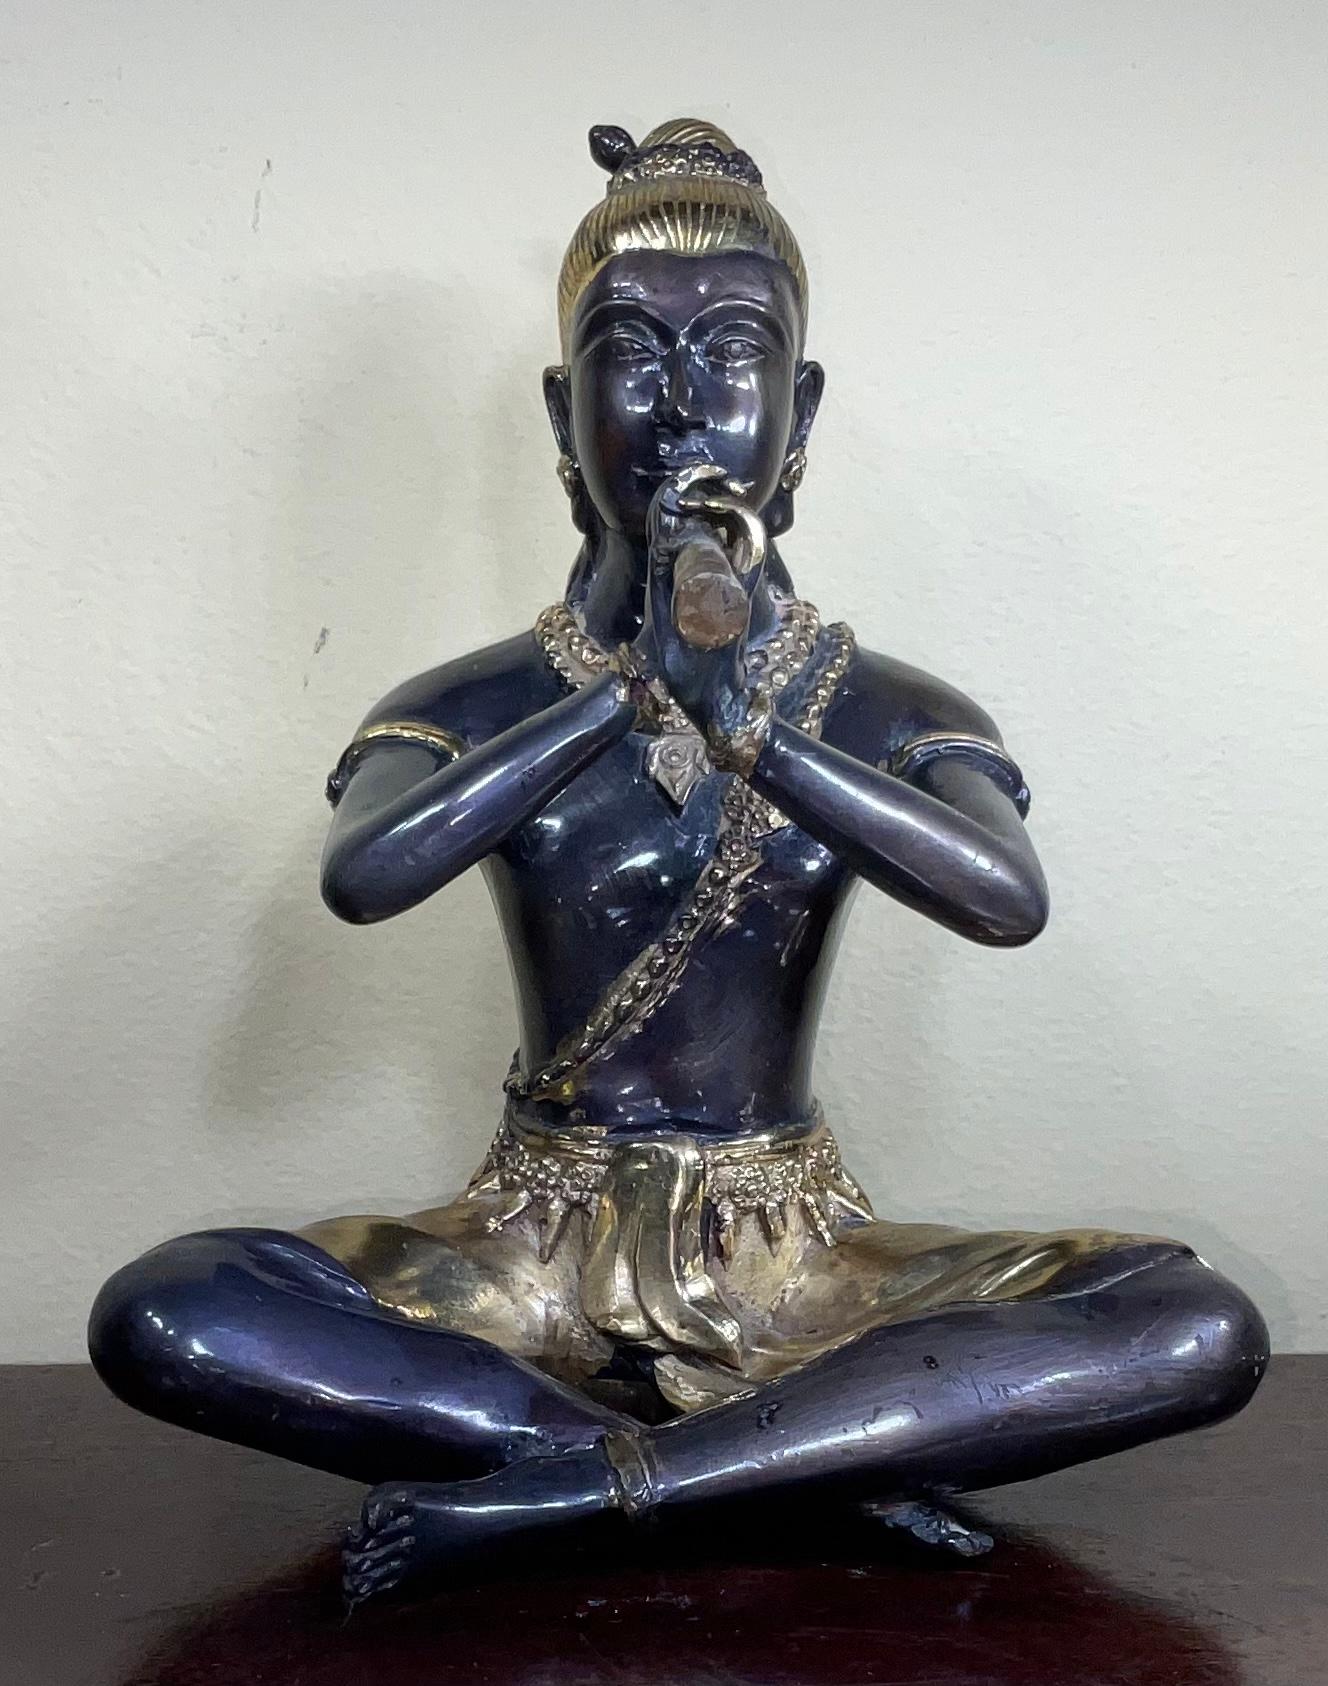 Orientalische Skulptur Figur Statue aus Bronze Studie eines Musikers, schönen Gesichtsausdruck mit zwei Ton von Patina grau und gold, massive Bronze .
Großartiges Kunstobjekt zum Ausstellen.